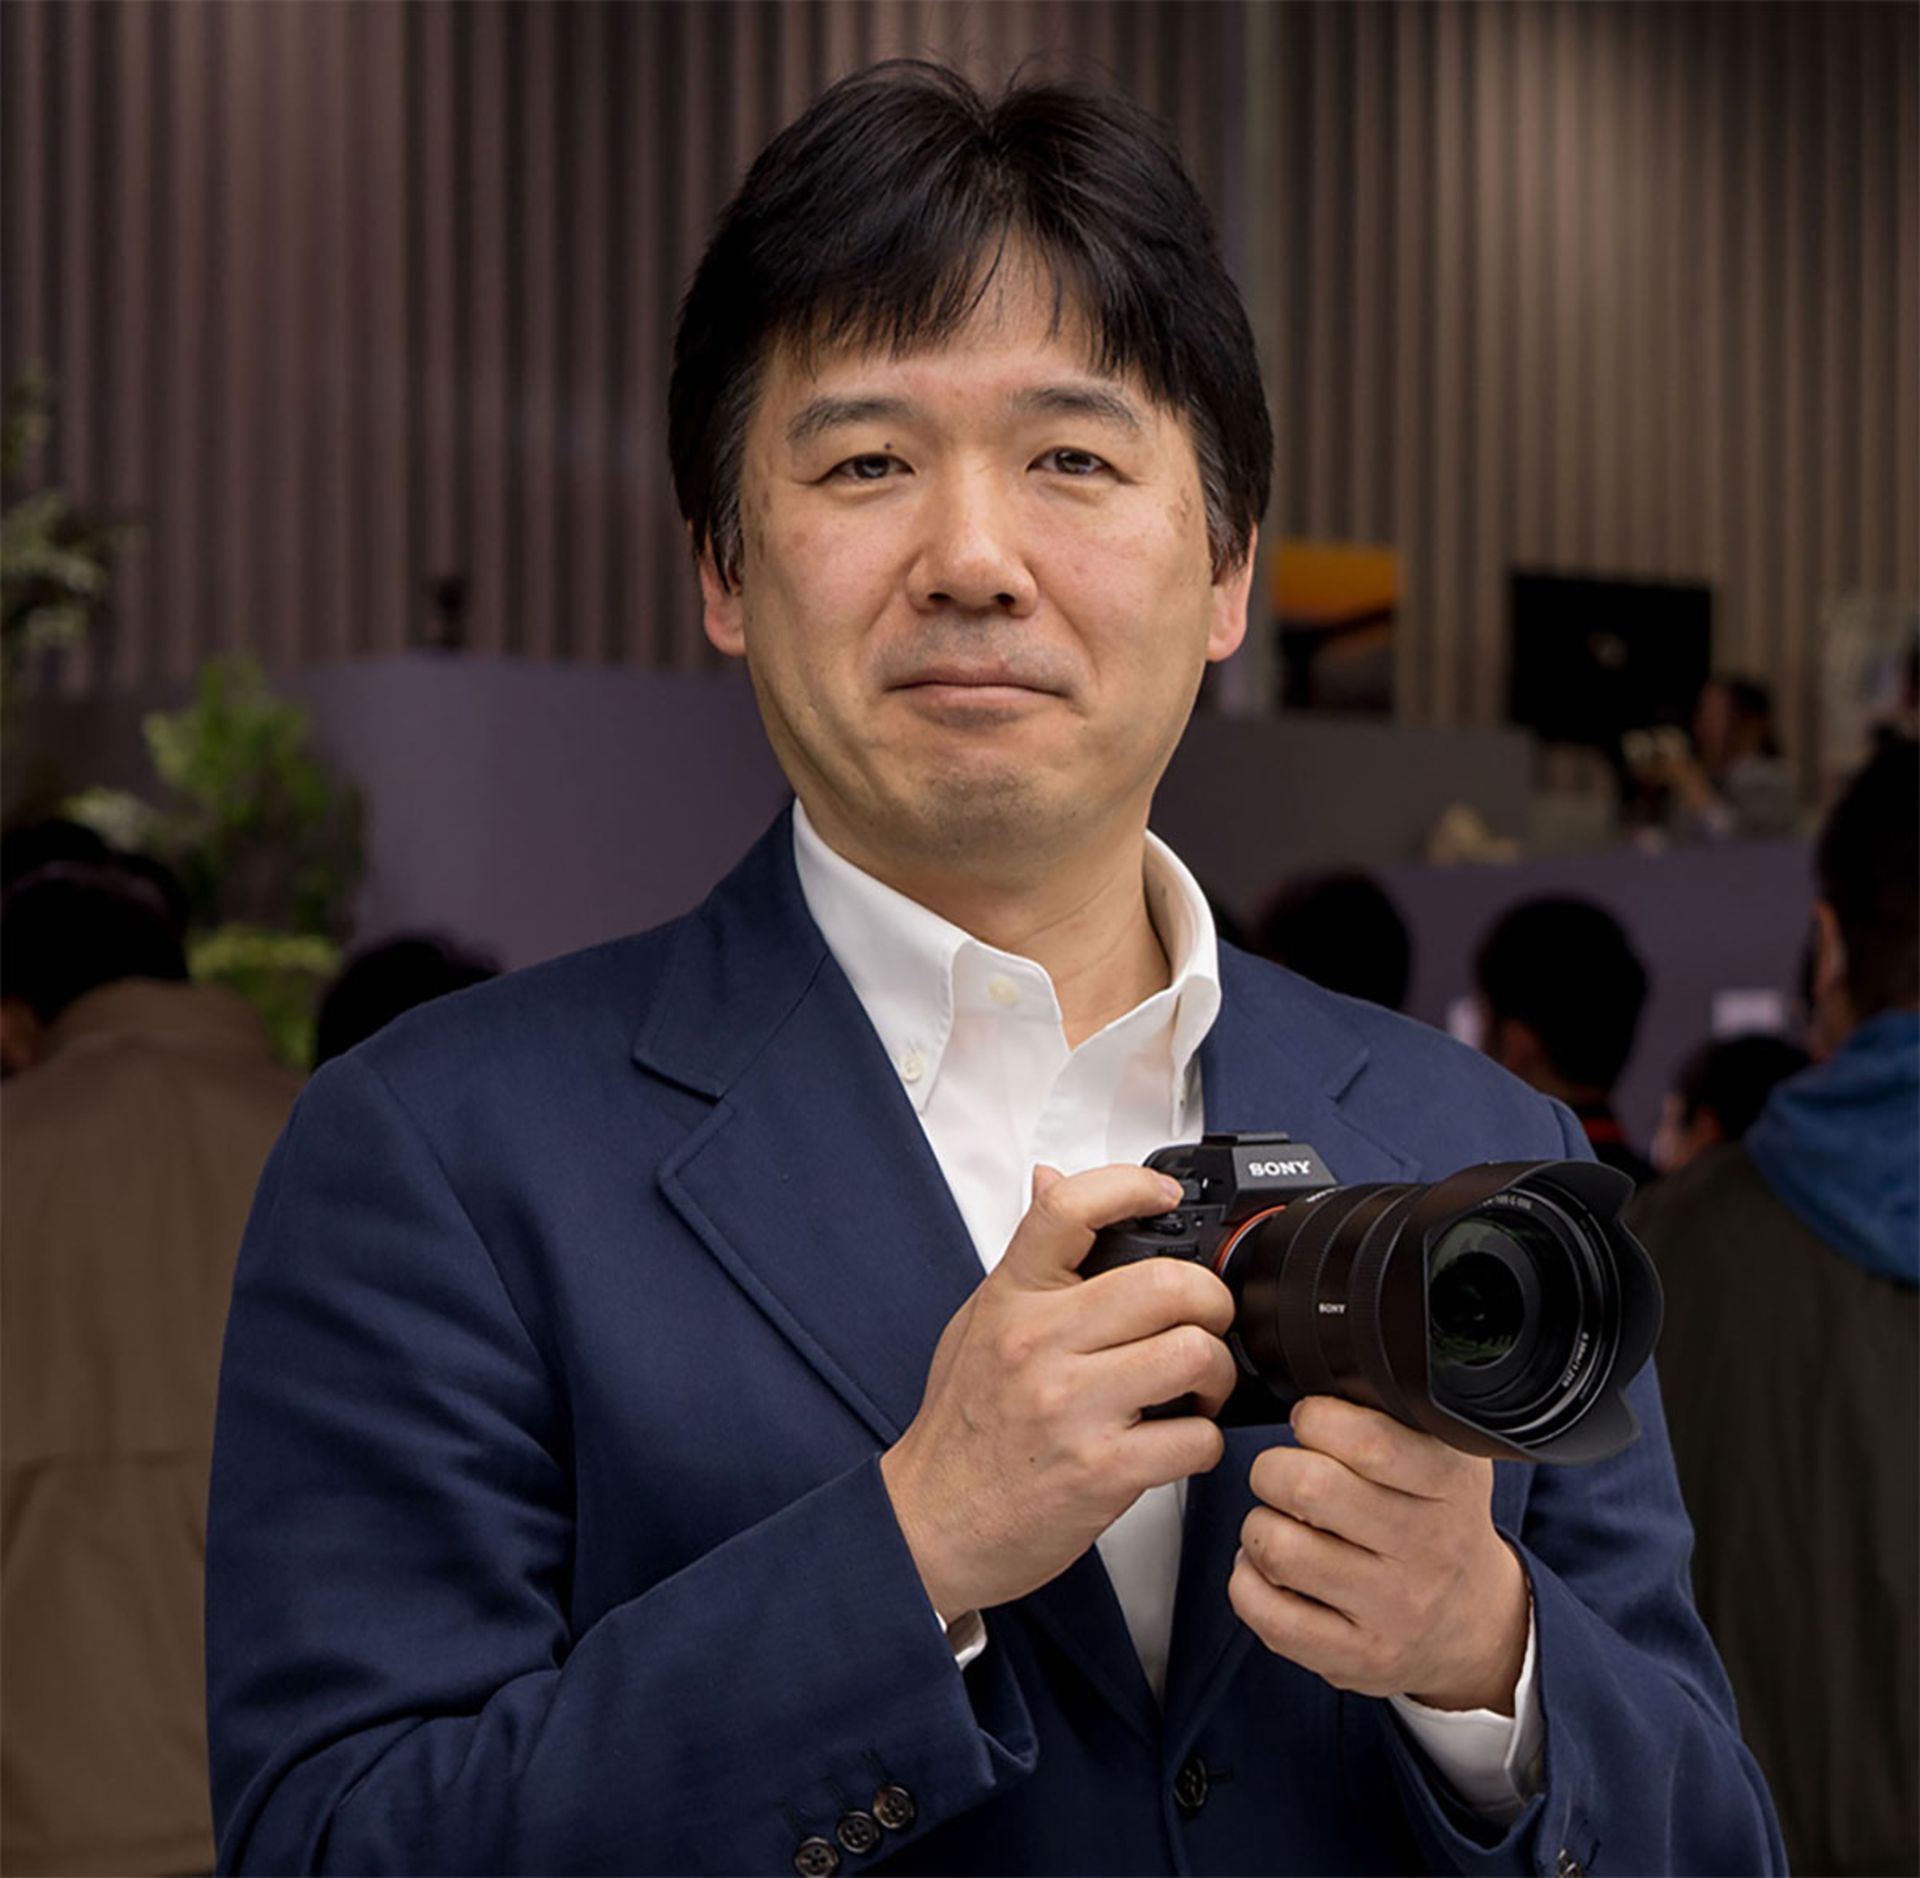 کنجی تاناکا، معاون ارشد و مدیر کل گروه تصویربرداری سونی